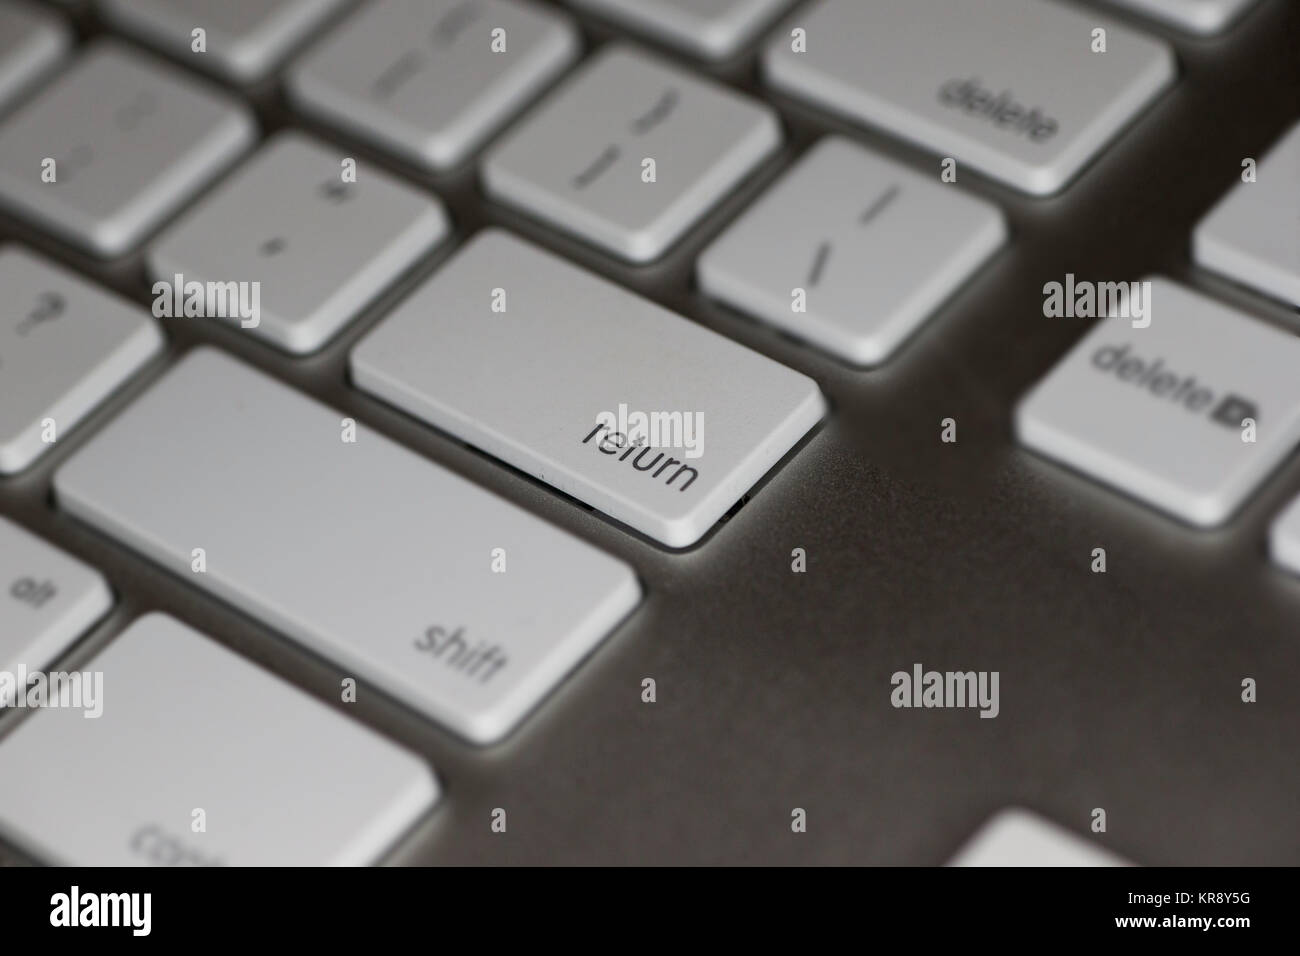 Nahaufnahme der RETURN-Taste auf dem Computer Tastatur mit weißen Tasten auf dunklem Hintergrund Stockfoto